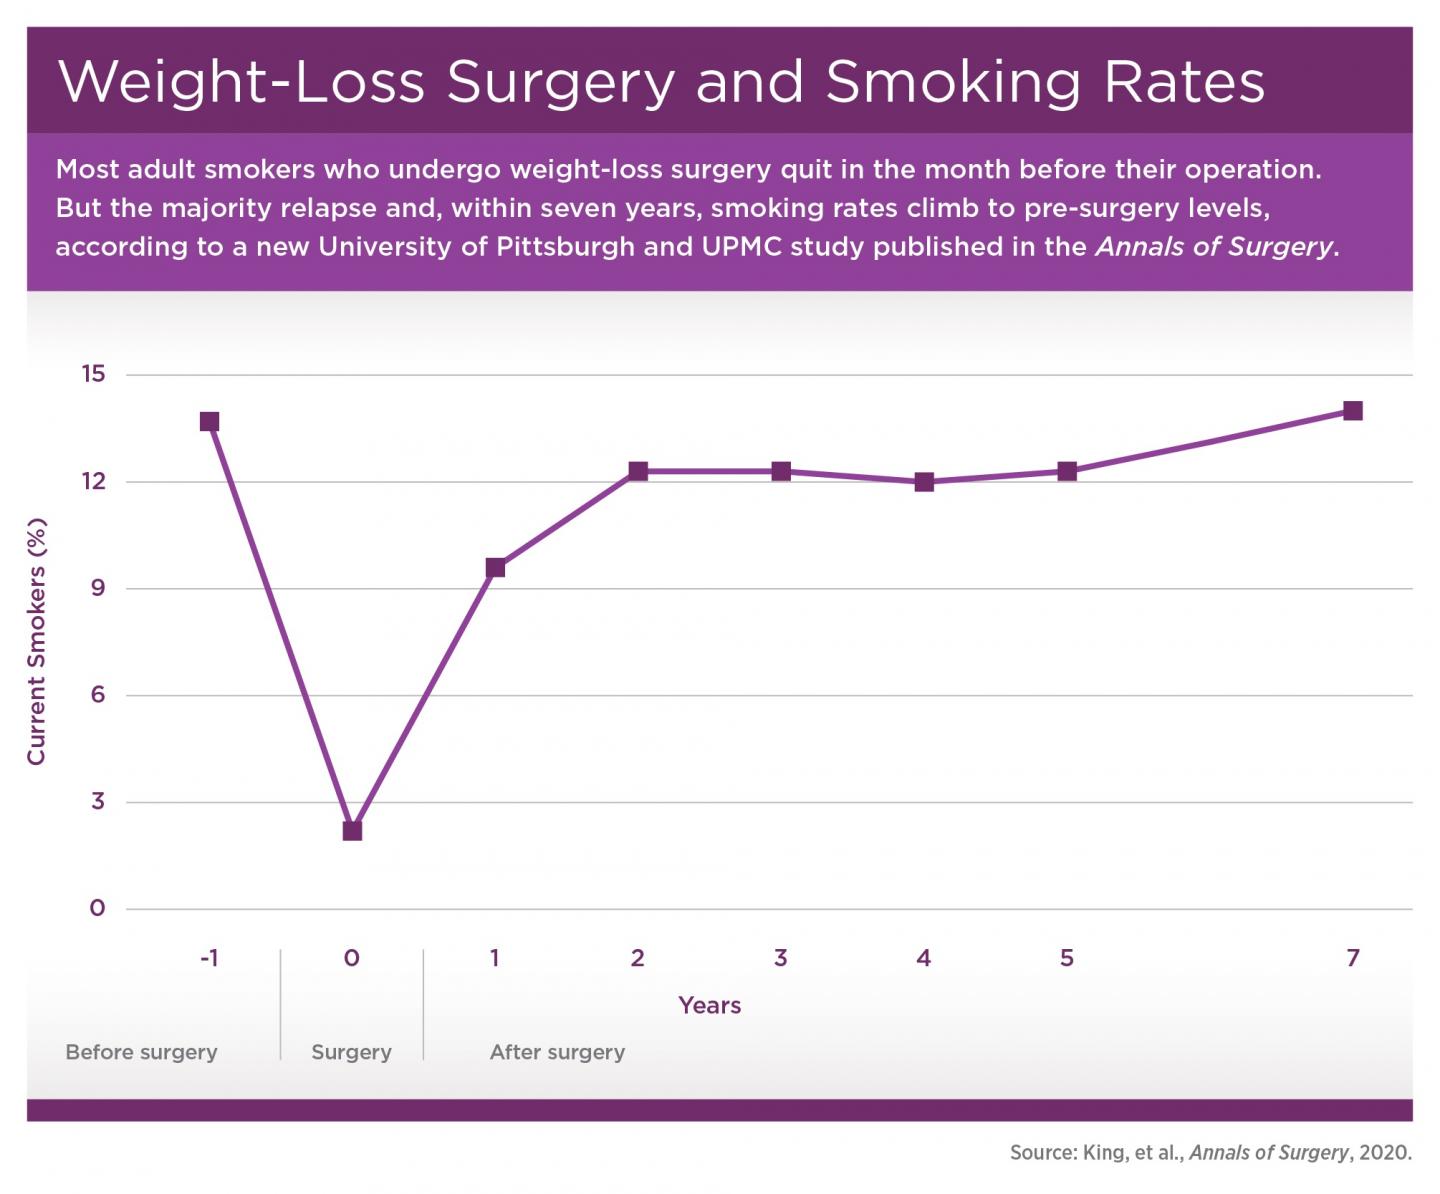 Weight-Loss Surgery and Smoking Rates